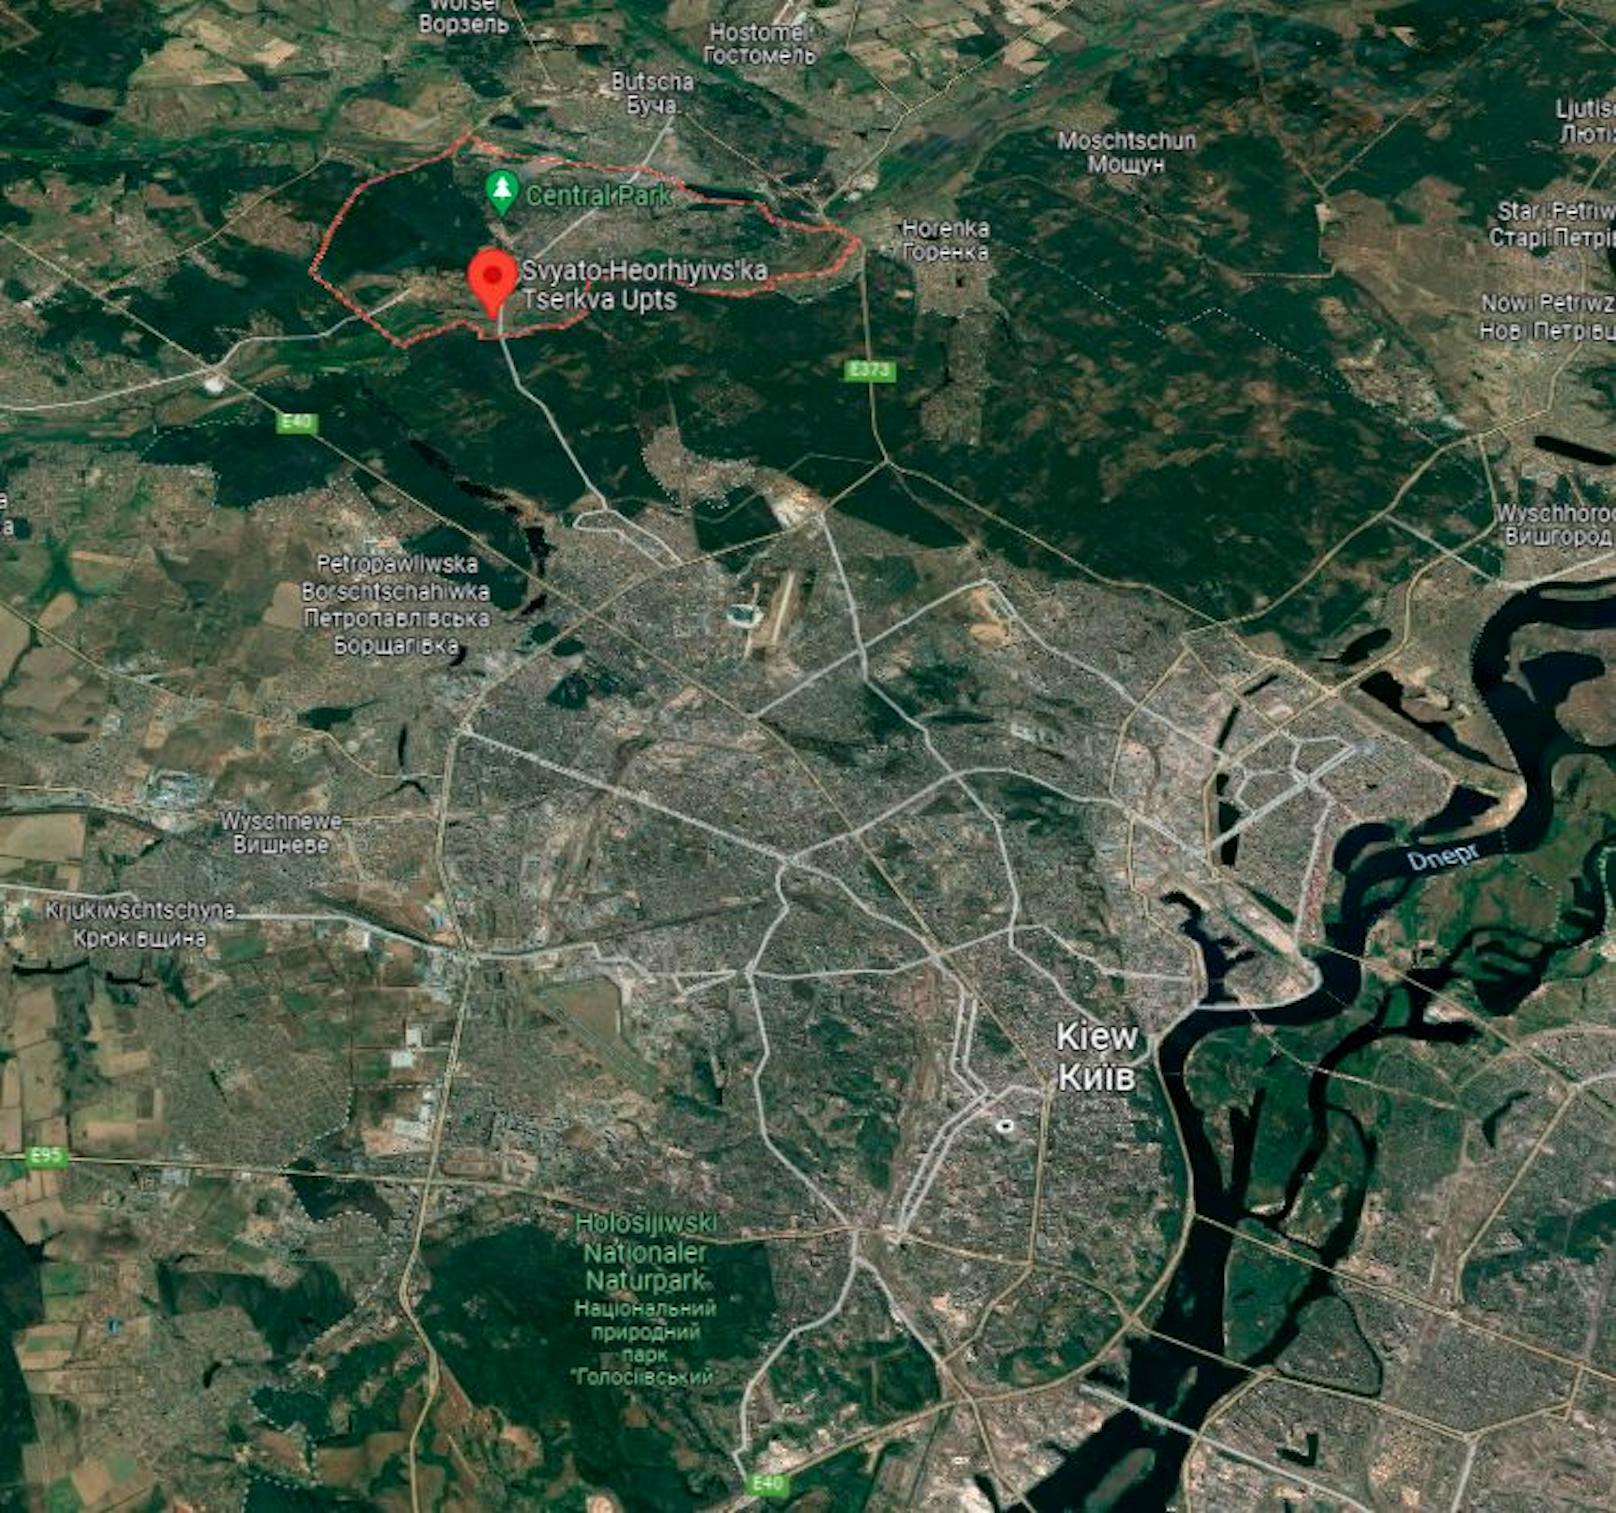 Von der zerstörten Brücke (roter Pin) sind es noch rund 5 Kilometer Wald und Felder bis zum tatsächlich bebauten Stadtgebiet Kiews.